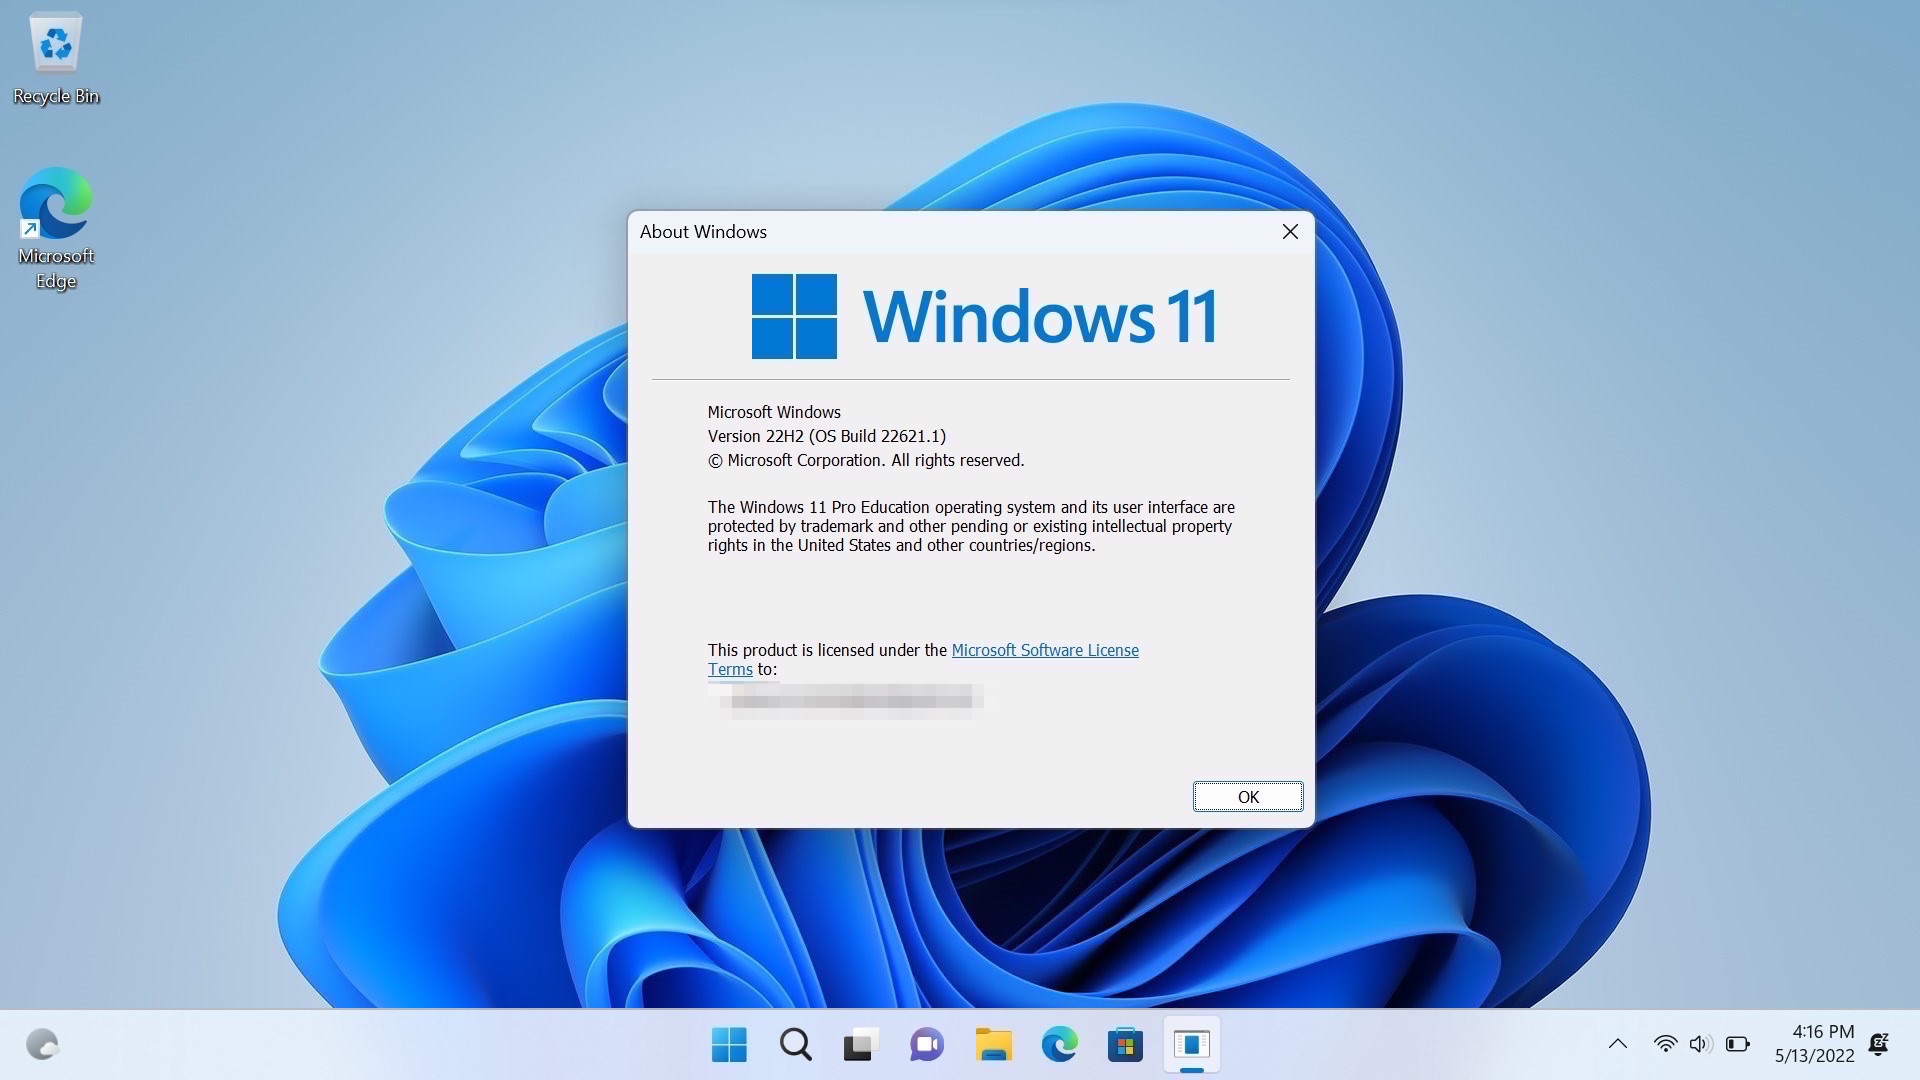 Tổng quan về Windows 11 22H2: Hãy tham gia để khám phá thế giới vi diệu của Windows 11 22H2 với những tính năng đang chờ đón bạn. Đừng bỏ lỡ sự cải tiến vượt bậc từ thiết kế đến khả năng tương thích vượt trội.